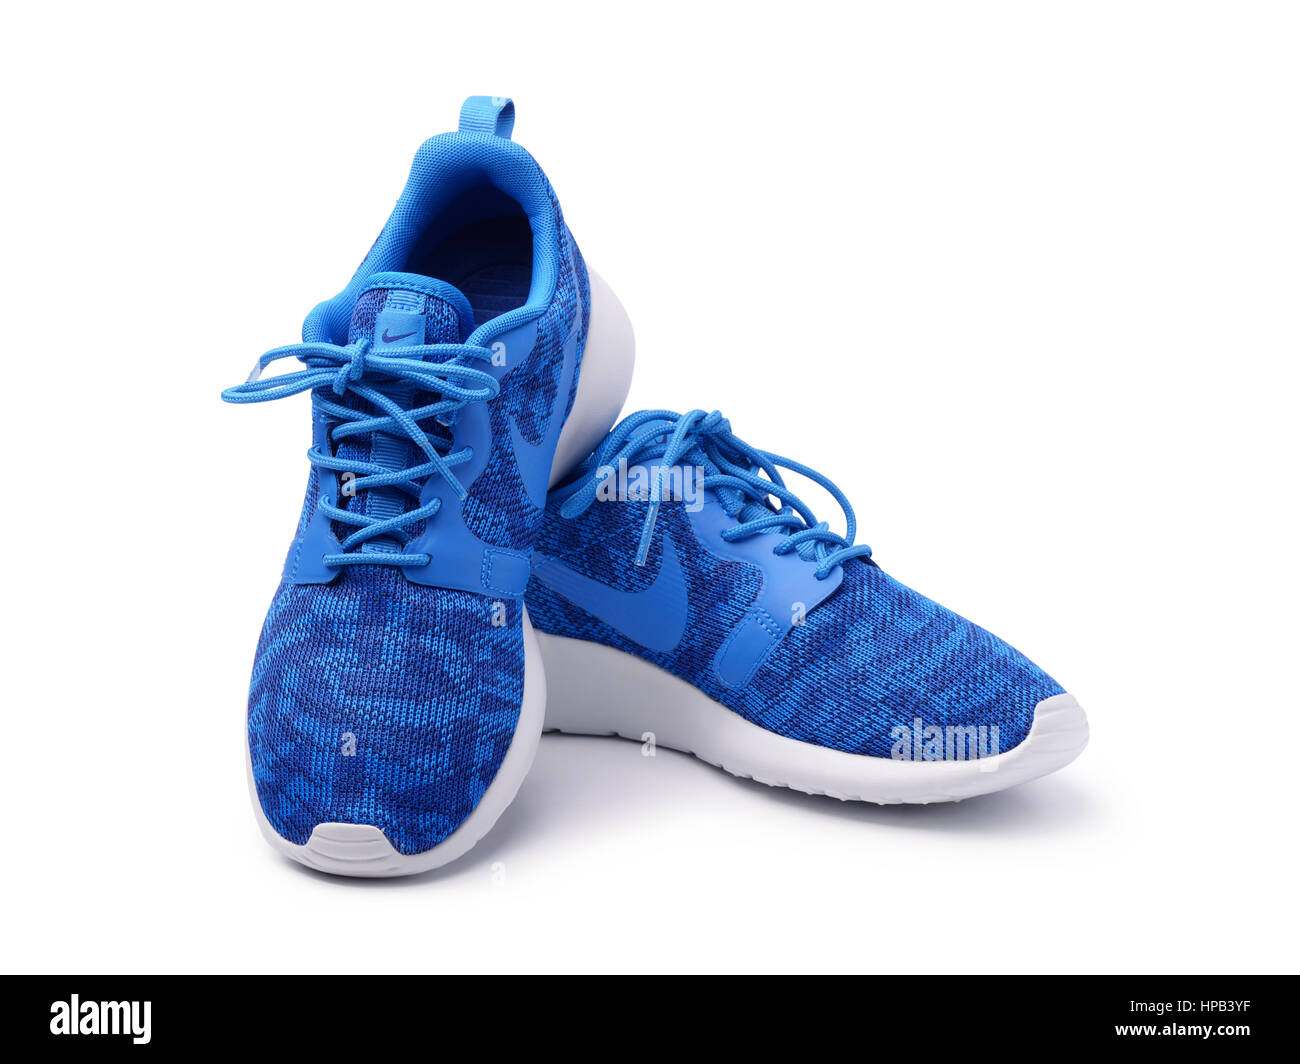 SAMARA, Rusia - 2015: mujer Nike zapatillas para correr, entrenamiento, en gris azul, mostrando el logo de Nike, a ilustrativo, la editorial Fotografía de stock - Alamy